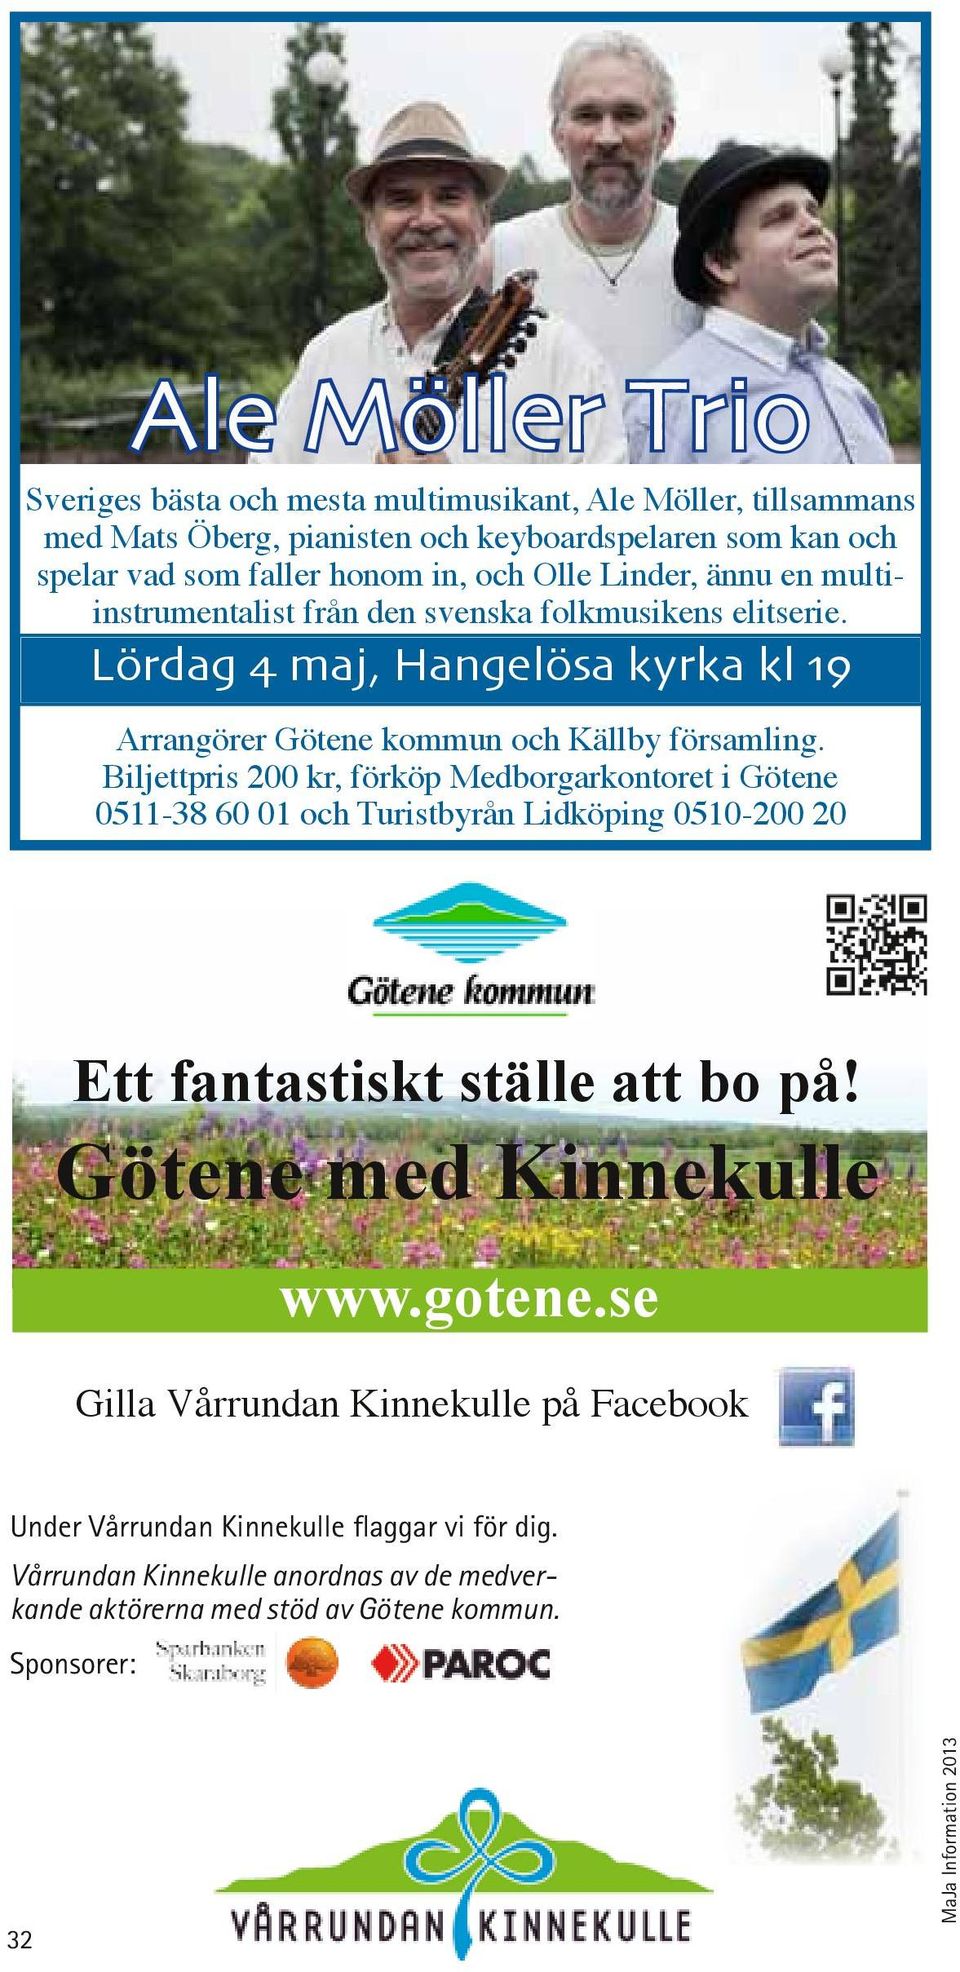 Biljettpris 200 kr, förköp Medborgarkontoret i Götene 0511-38 60 01 och Turistbyrån Lidköping 0510-200 20 Ett fantastiskt ställe att bo på! Götene med Kinnekulle www.gotene.